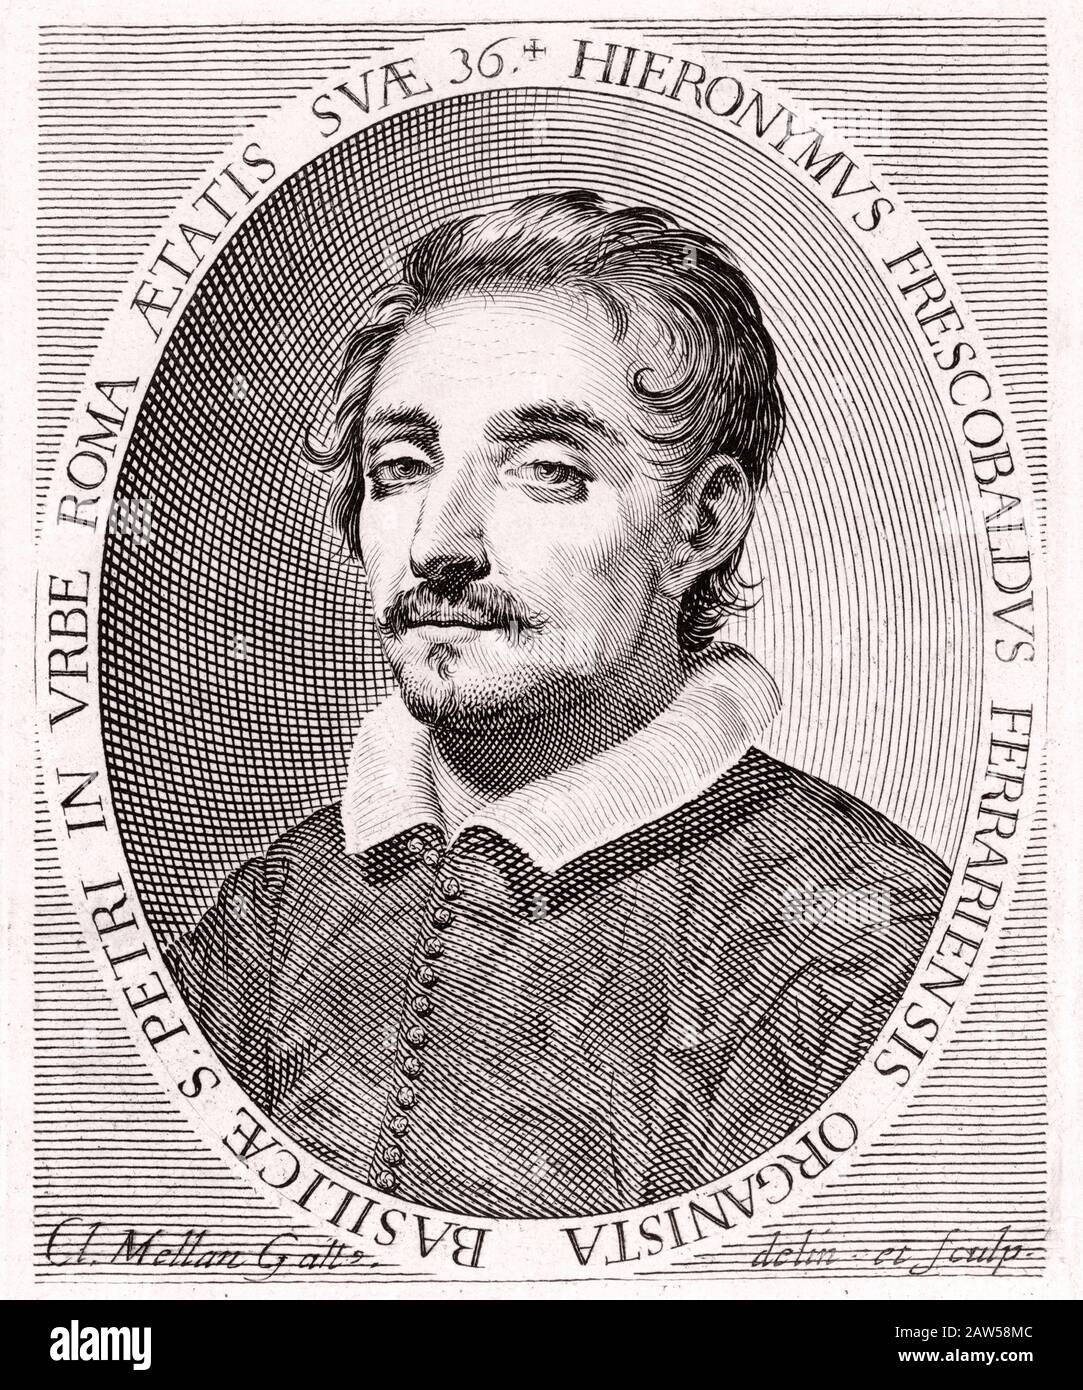 1619, ROMA, ITALIEN: Der gefeierte italienische Musikopernkomponist und Organist GIROLAMO FRESCOBALDI (* 1583; † 1643). Porträt mit französischer Farbe eingraviert Stockfoto